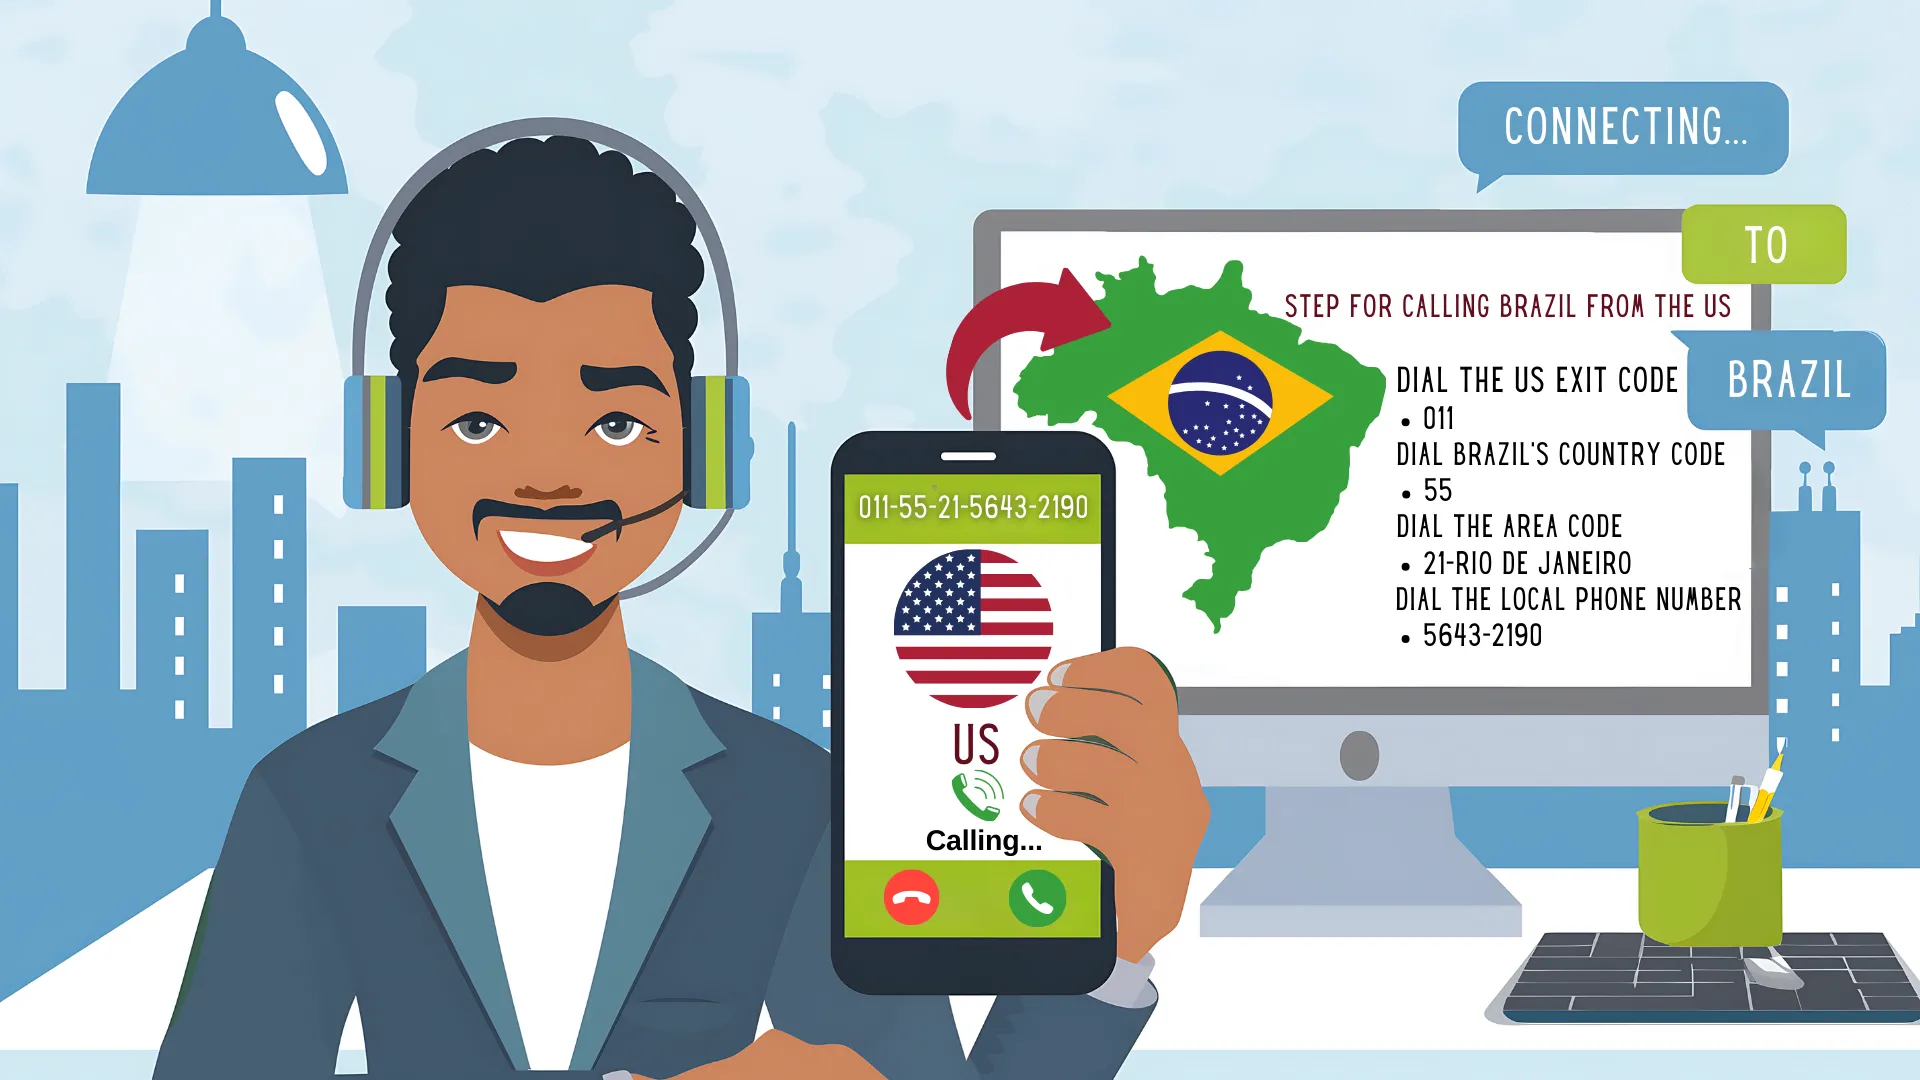 In Brasilien anrufen: Ihre Schritt-für-Schritt-Anleitung